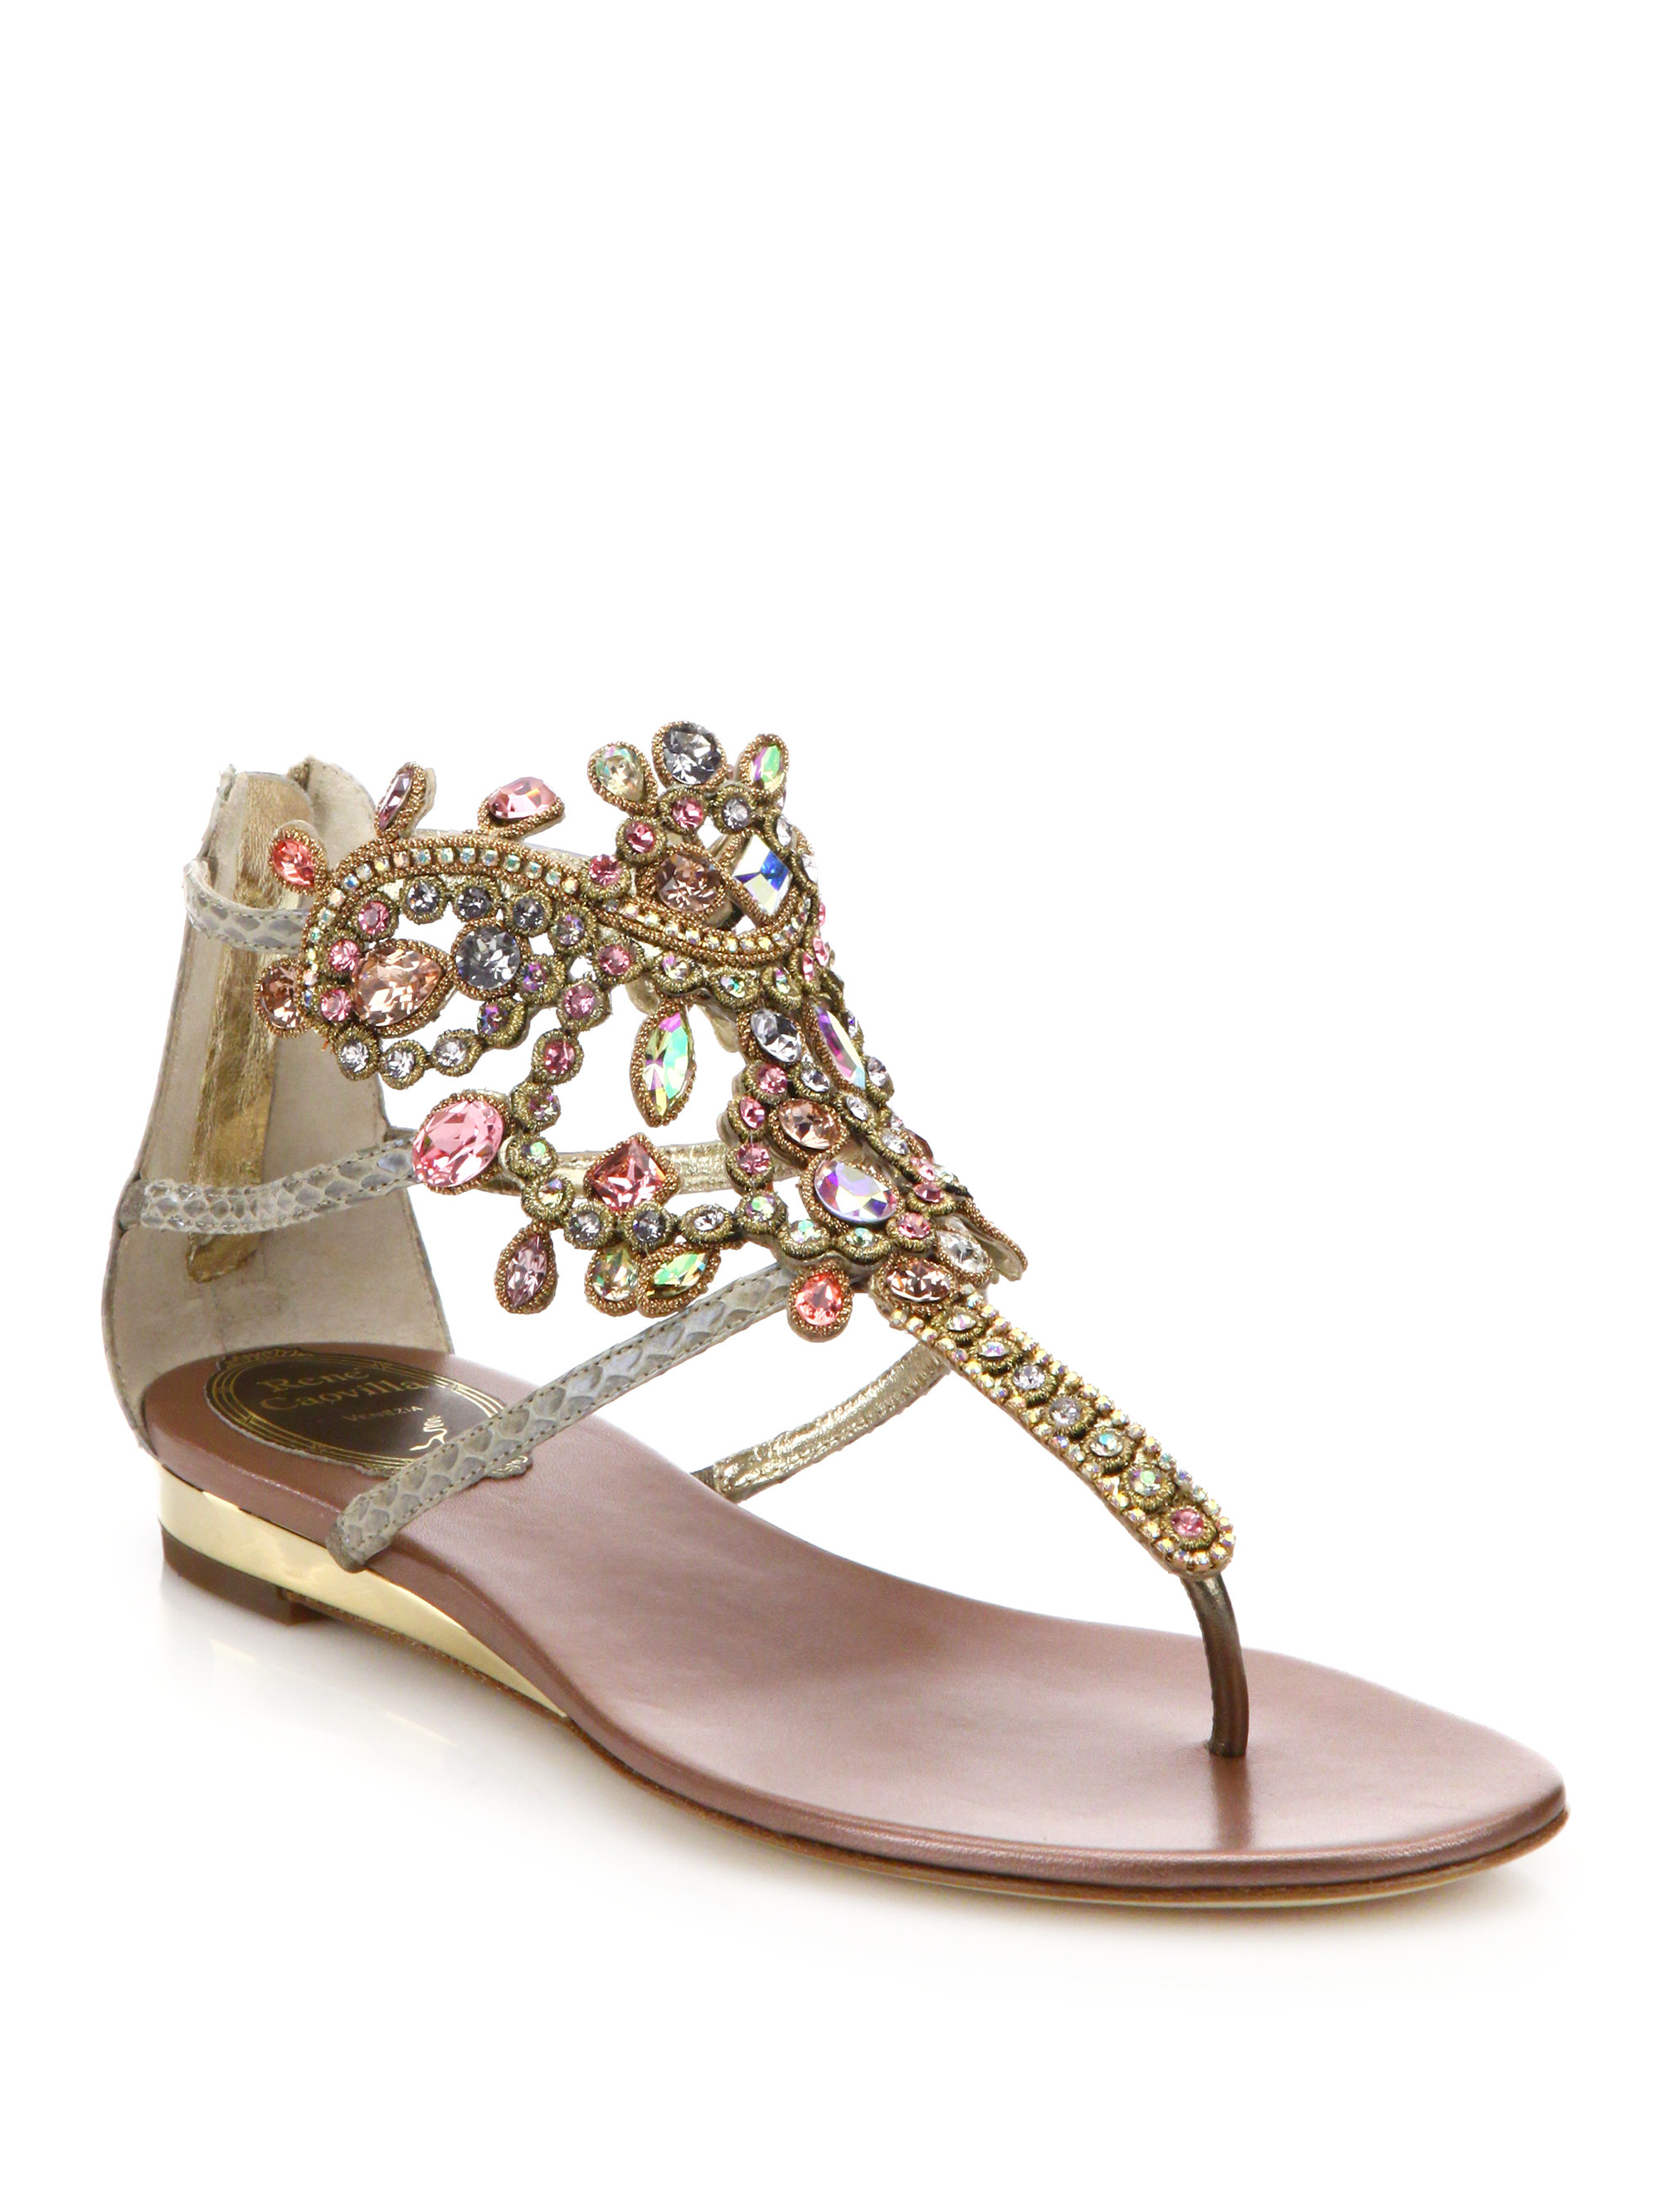 Lyst - Rene Caovilla Swarovski Crystal-embellished Snakeskin Sandals in ...